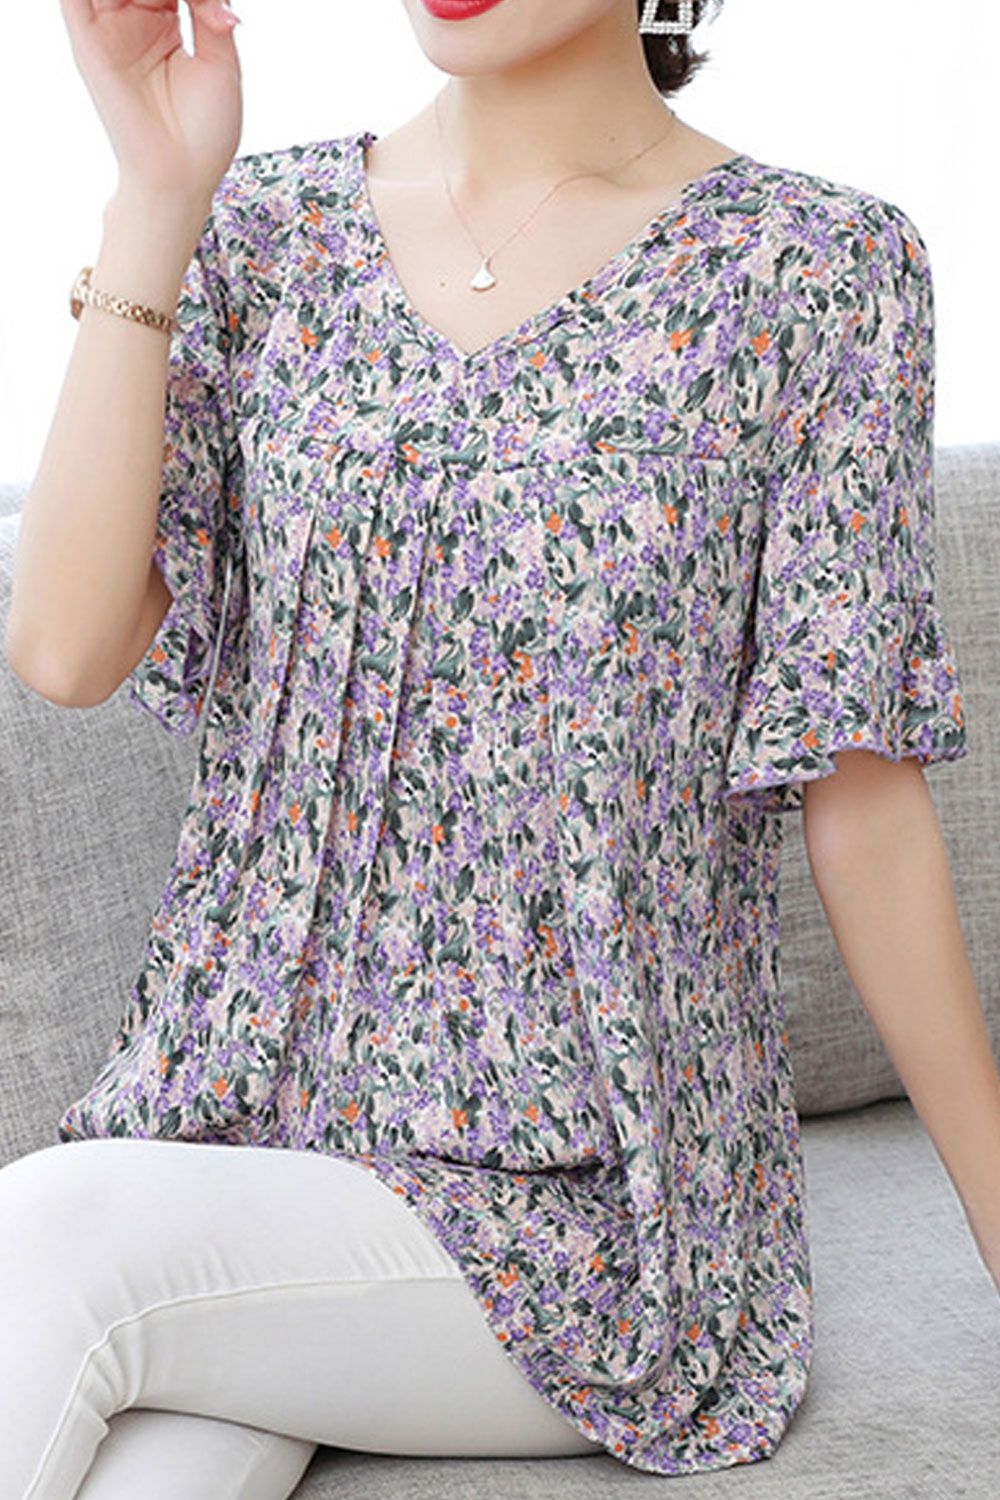 Zumeet Women Floral Short Sleeve Loose Comfortable Summer Shirt